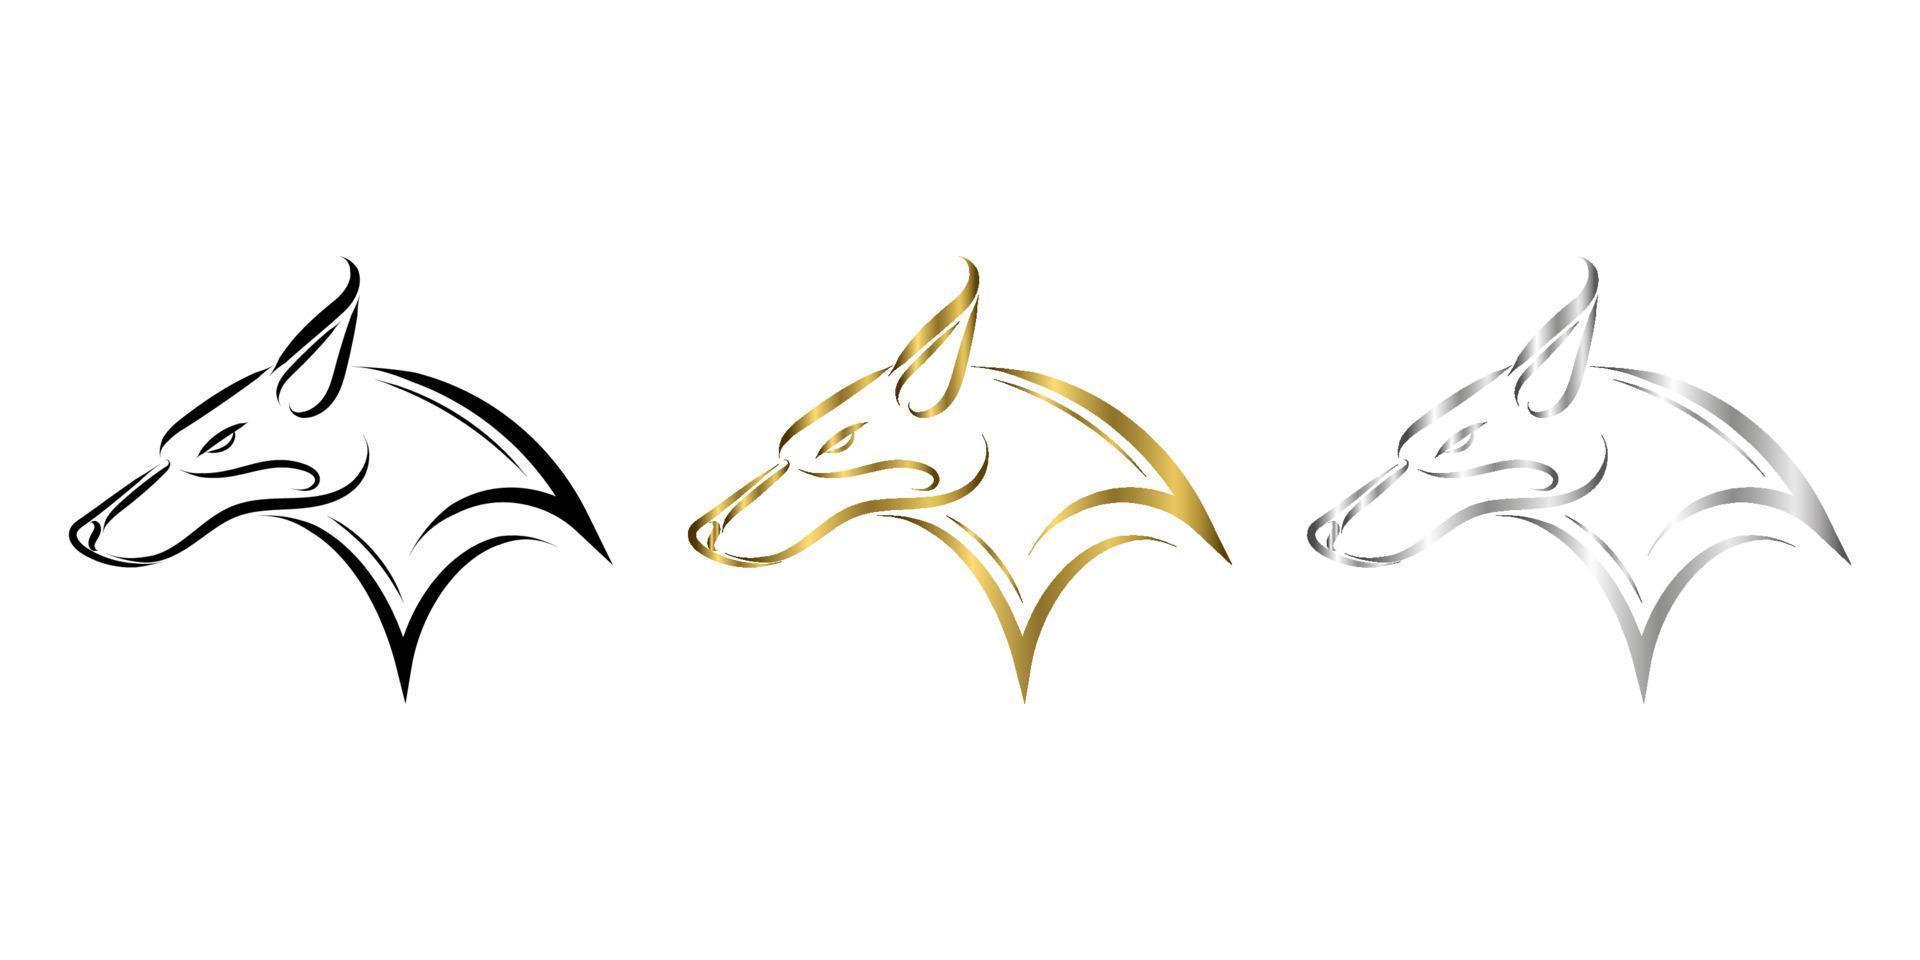 três cores de ouro preto e linha de arte de prata da cabeça de raposa. bom uso de símbolo, mascote, ícone, avatar, tatuagem, design de camiseta, logotipo ou qualquer design que você quiser. vetor